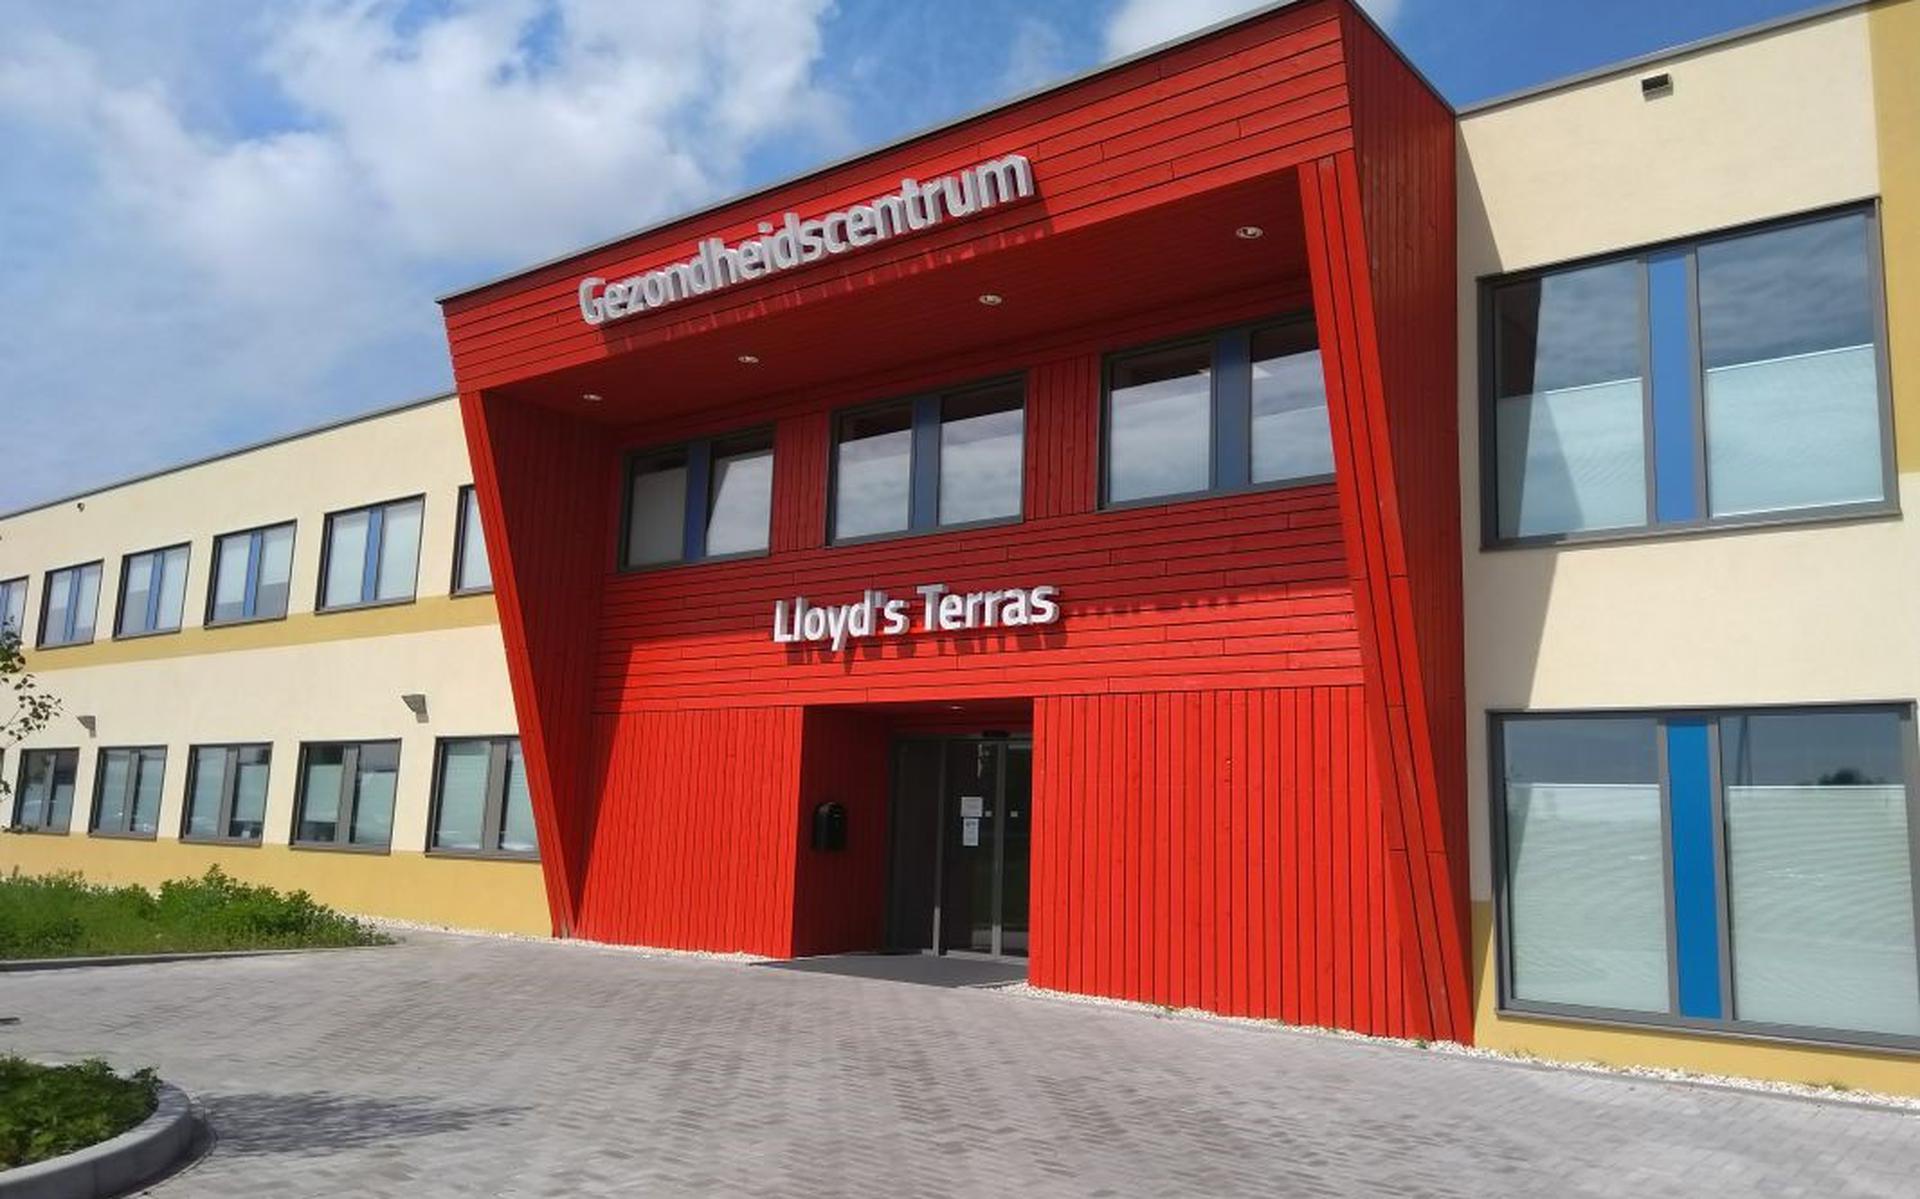 Gezondheidscentrum Lloyd’s Terras in Veendam. 